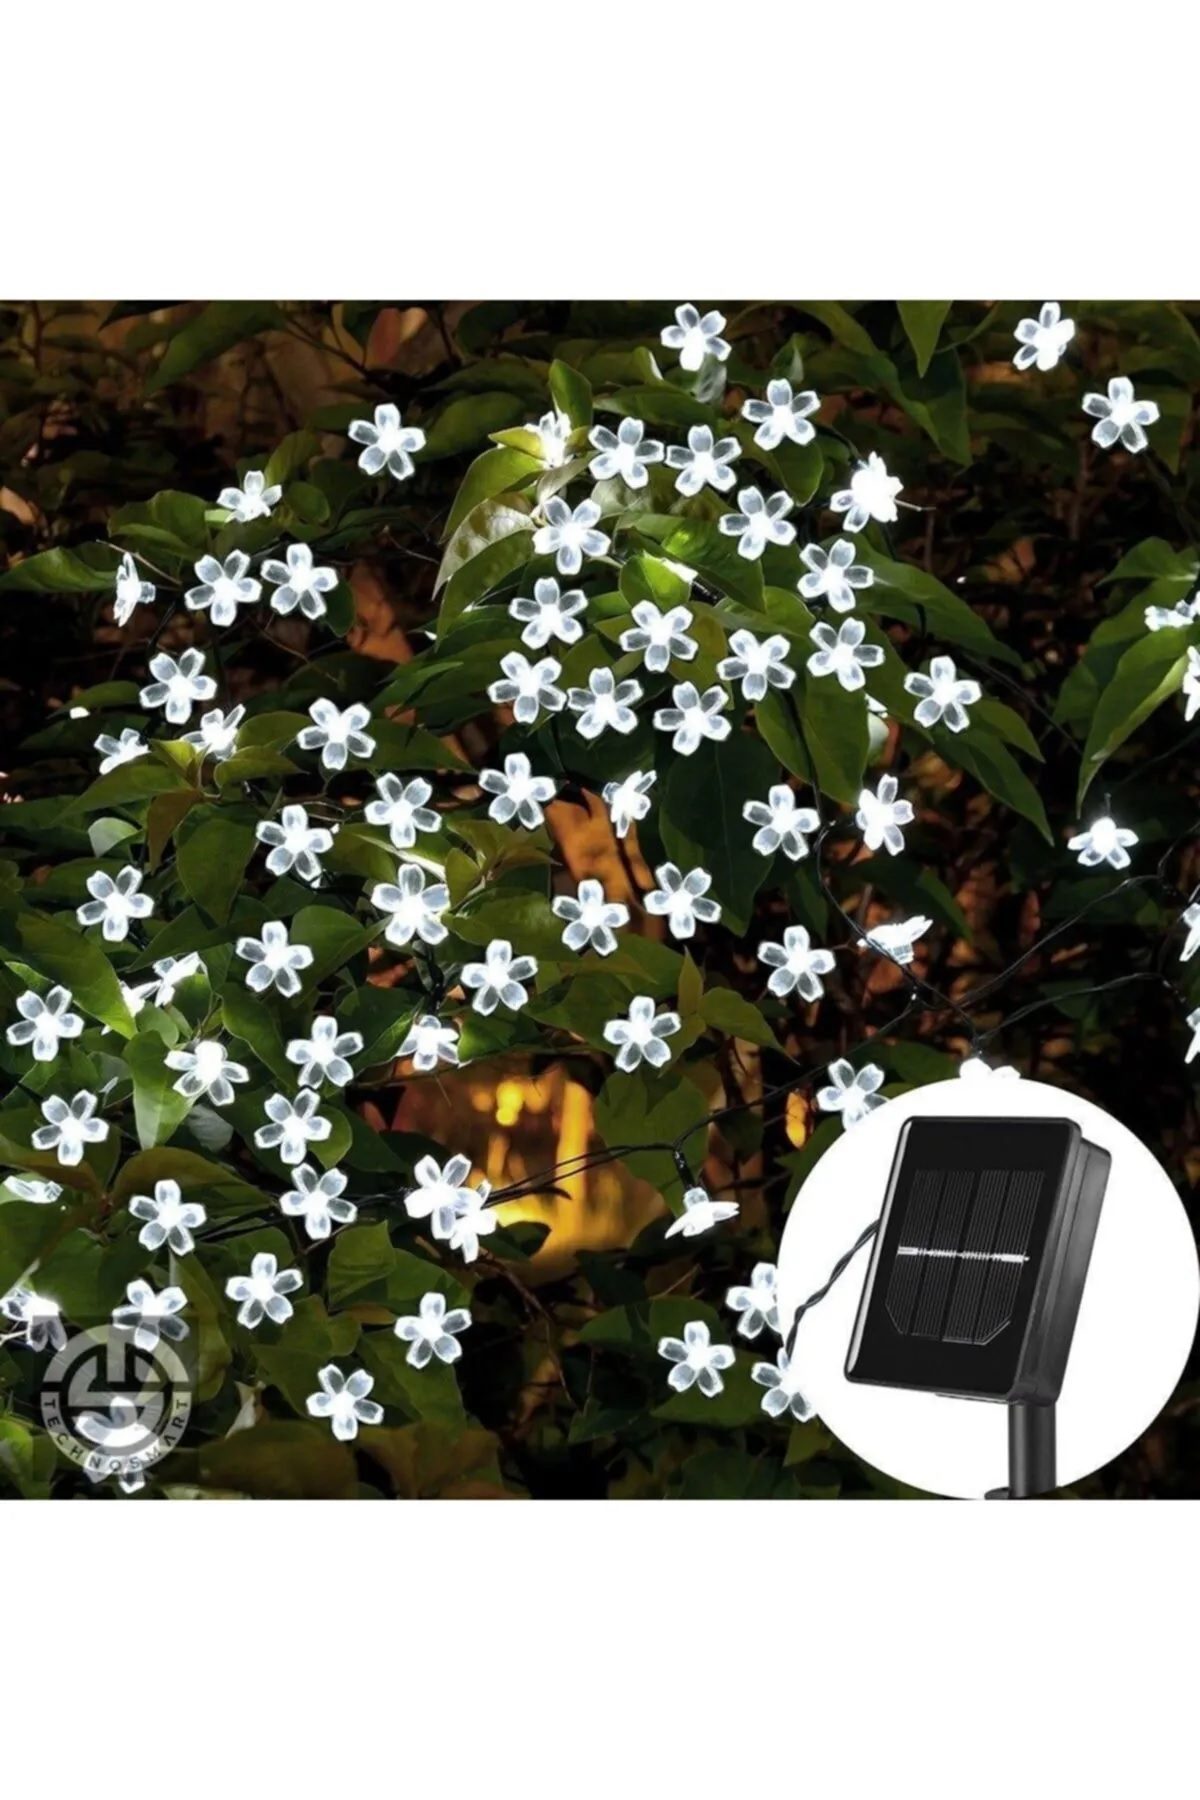 CLZ192 Solar 30 Ledli Çiçekli Beyaz Led Bahçe Aydınlatma Dekorasyon Güneş Enerjili